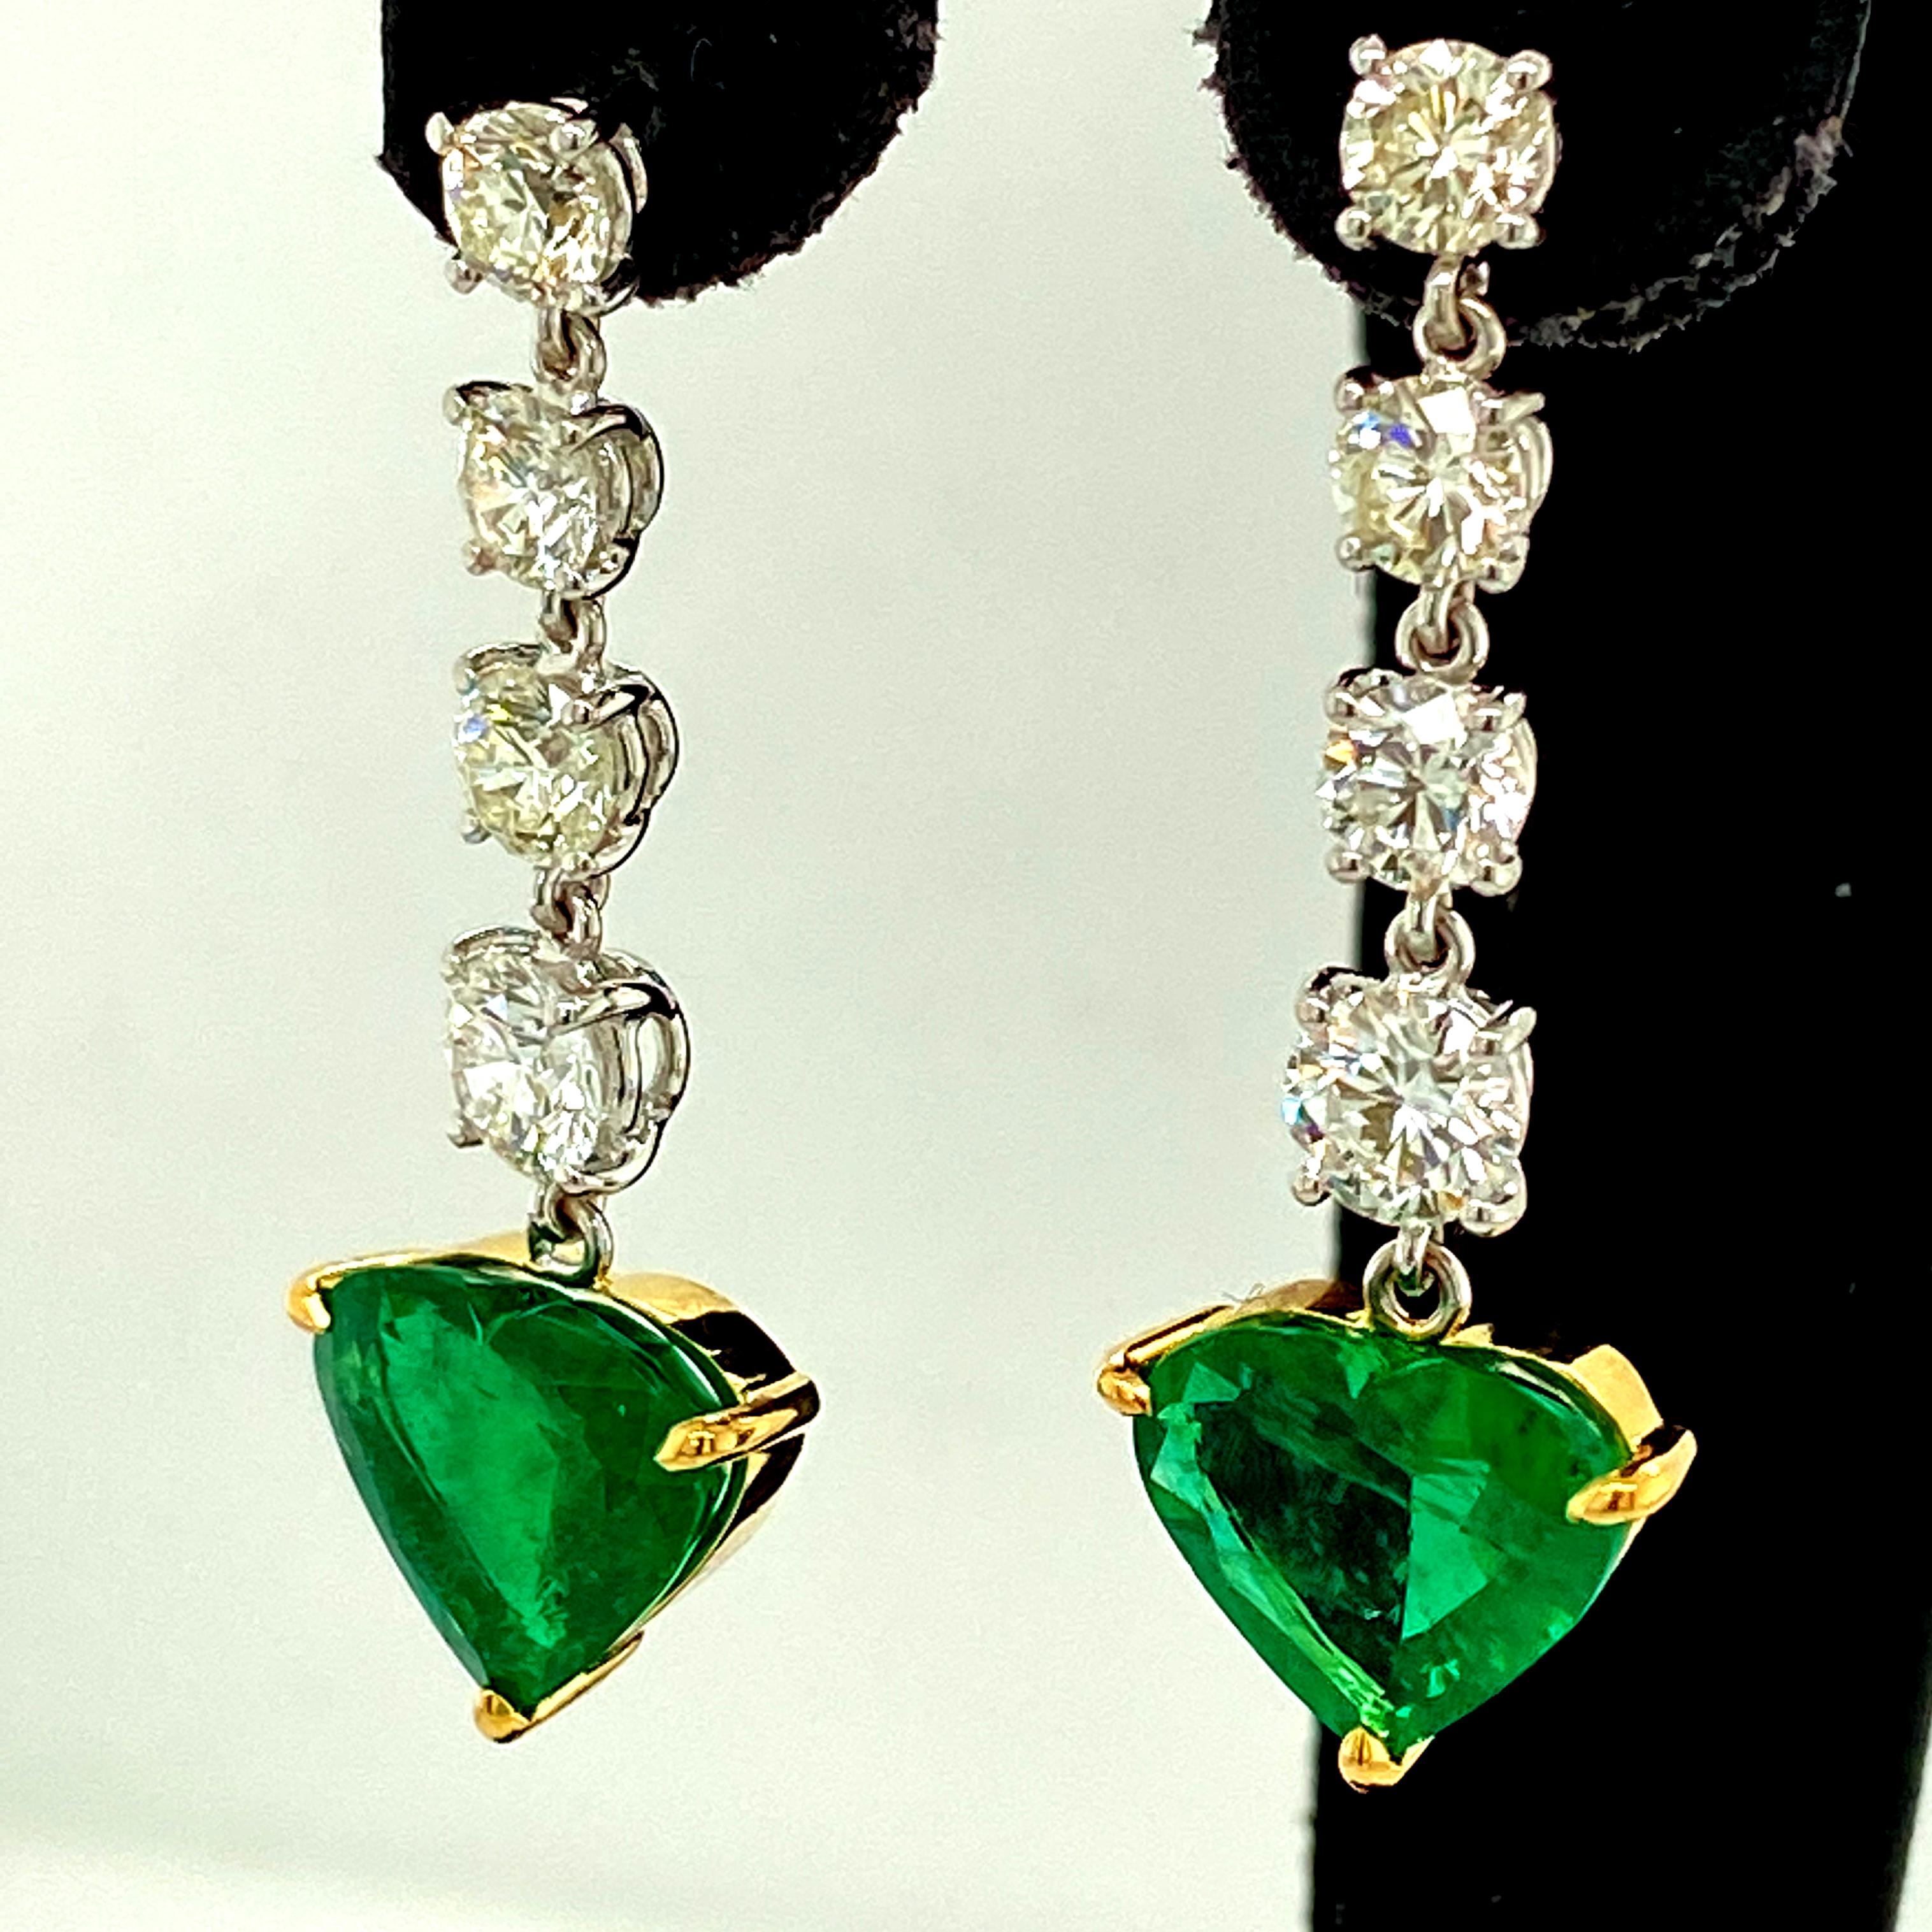 5,19 Karat GRS Certified Vivid Green No Oil Smaragd und Diamant-Ohrringe:

Dieses prächtige Paar Ohrringe besteht aus einem auffallend schönen Paar herzförmiger Smaragde von 5,19 Karat, die von GRS Lab als völlig unverbessert (